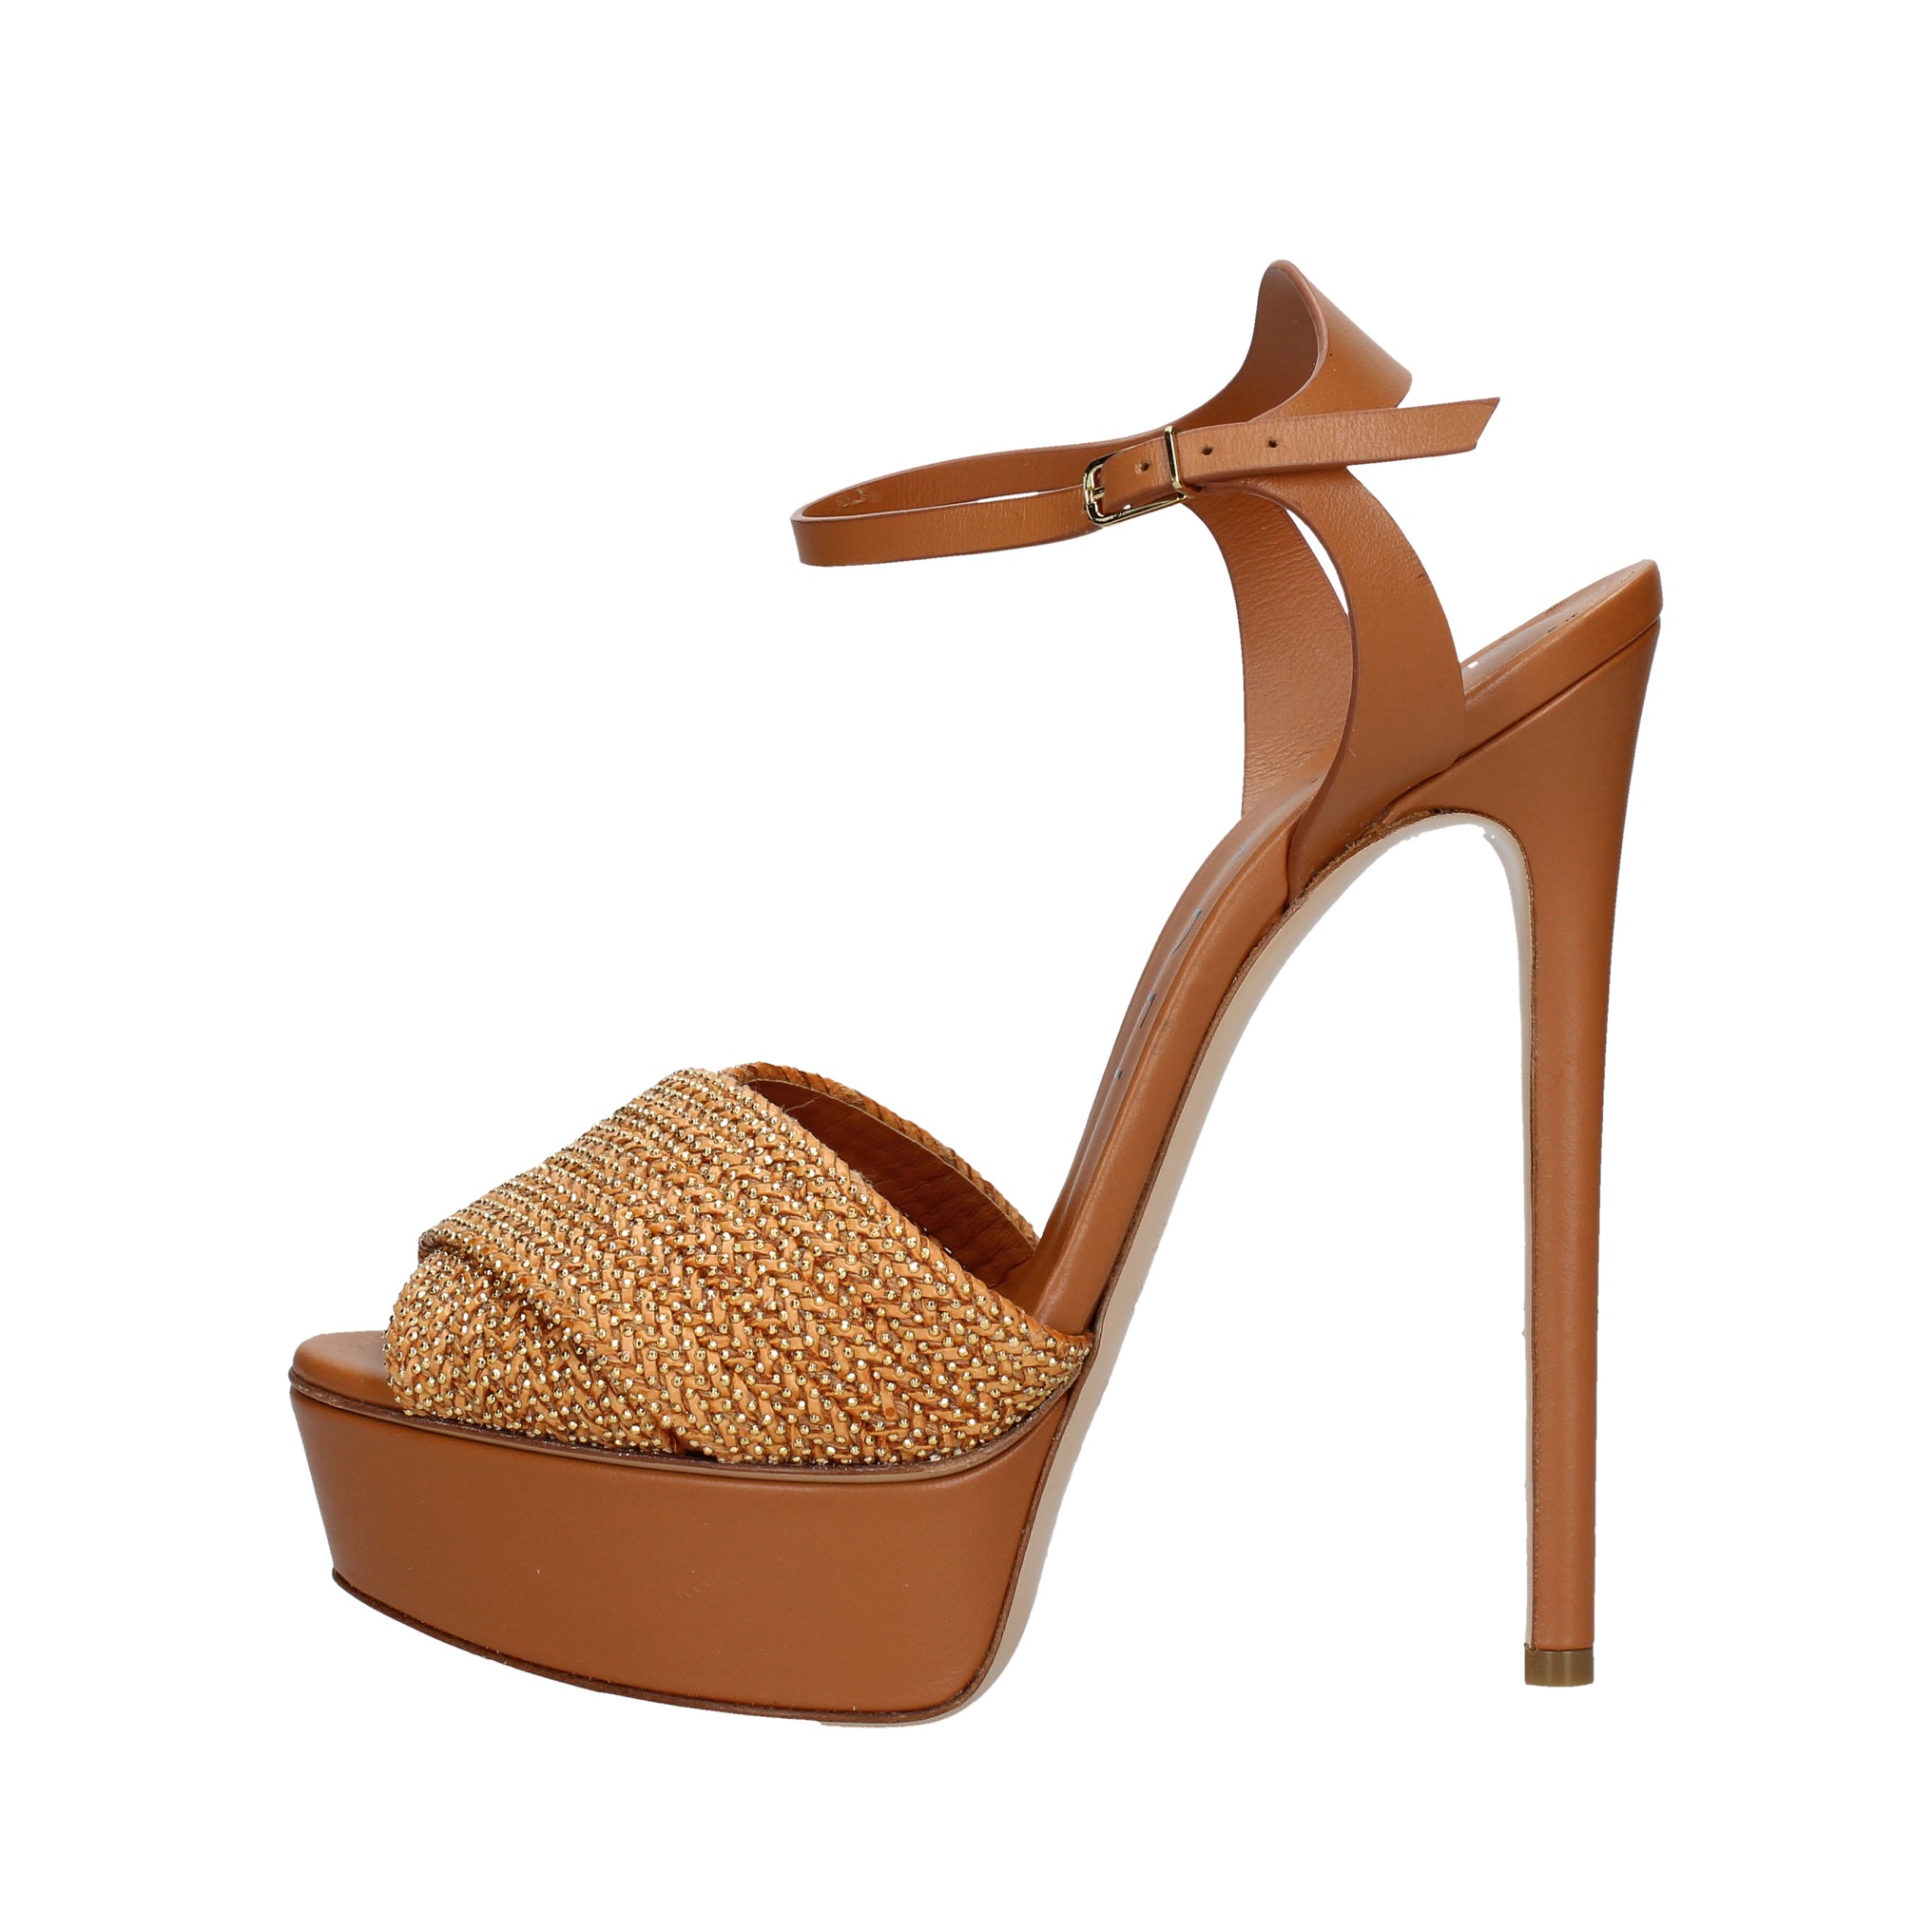 Sandali in pelle e piccole borchie oro - CASADEI - Ginevra calzature